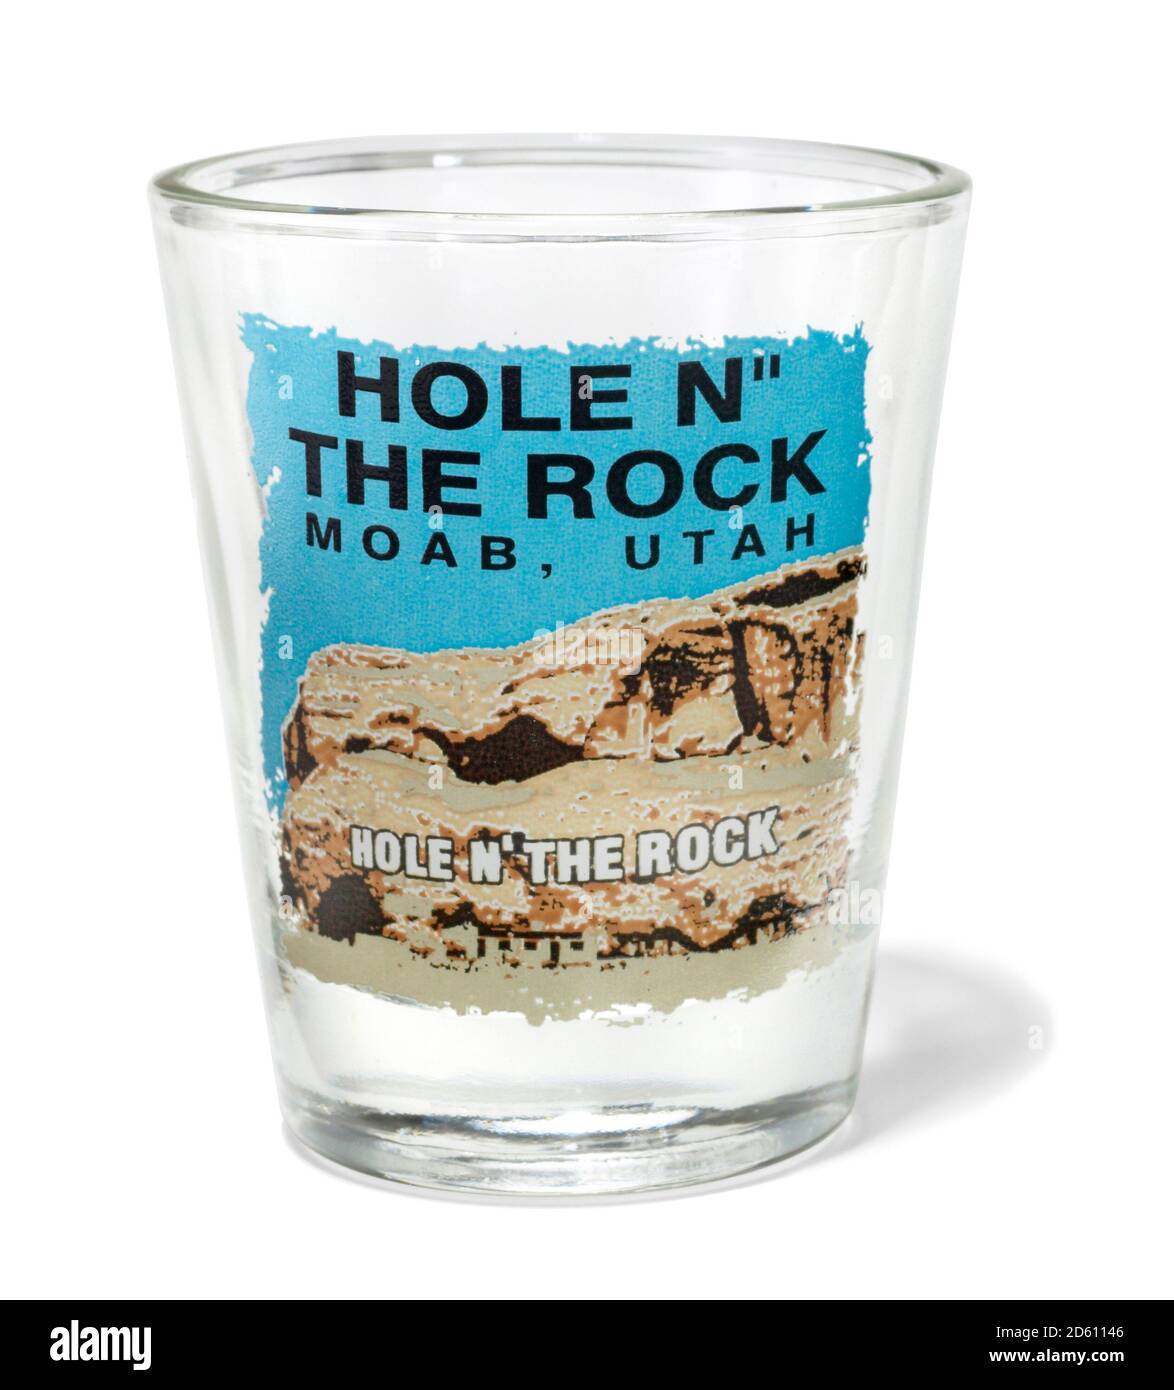 Hole n' The Rock souvenir verre tiré de Moab, Utah, photographié sur fond blanc Banque D'Images